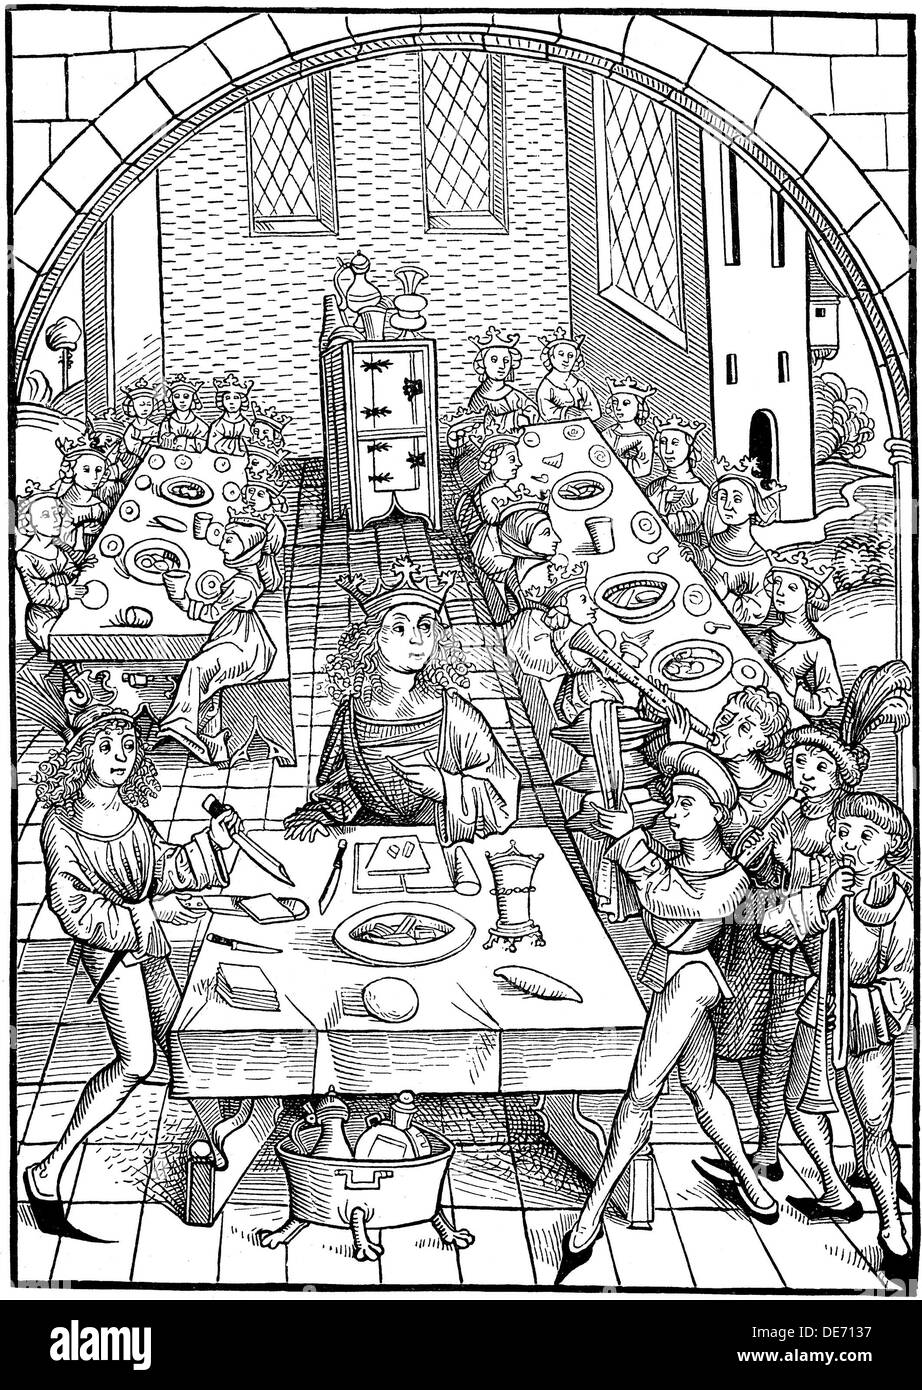 Illustration pour le livre Schatzkammer, 1490-1491. Artiste : Michael Wolgemut, (1434-1519) Banque D'Images